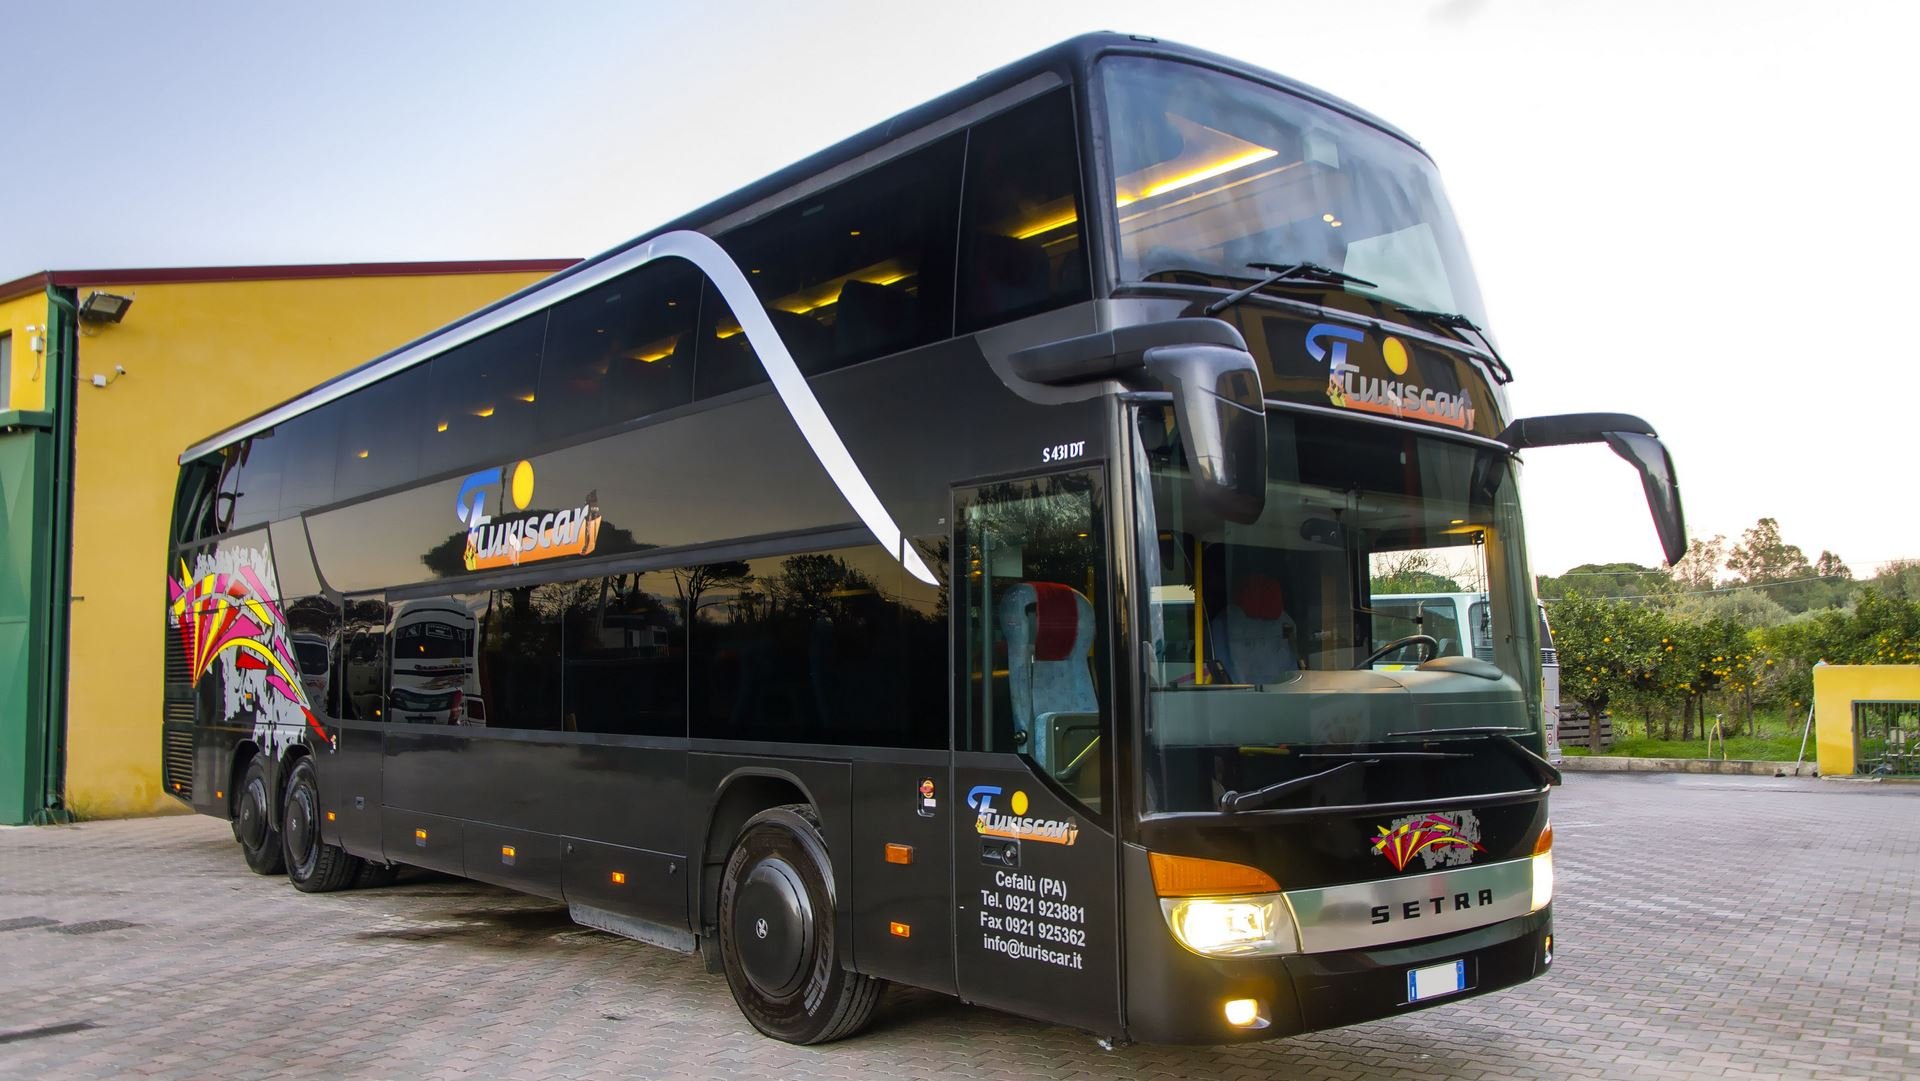 Автобусом по европе с компанией intercars